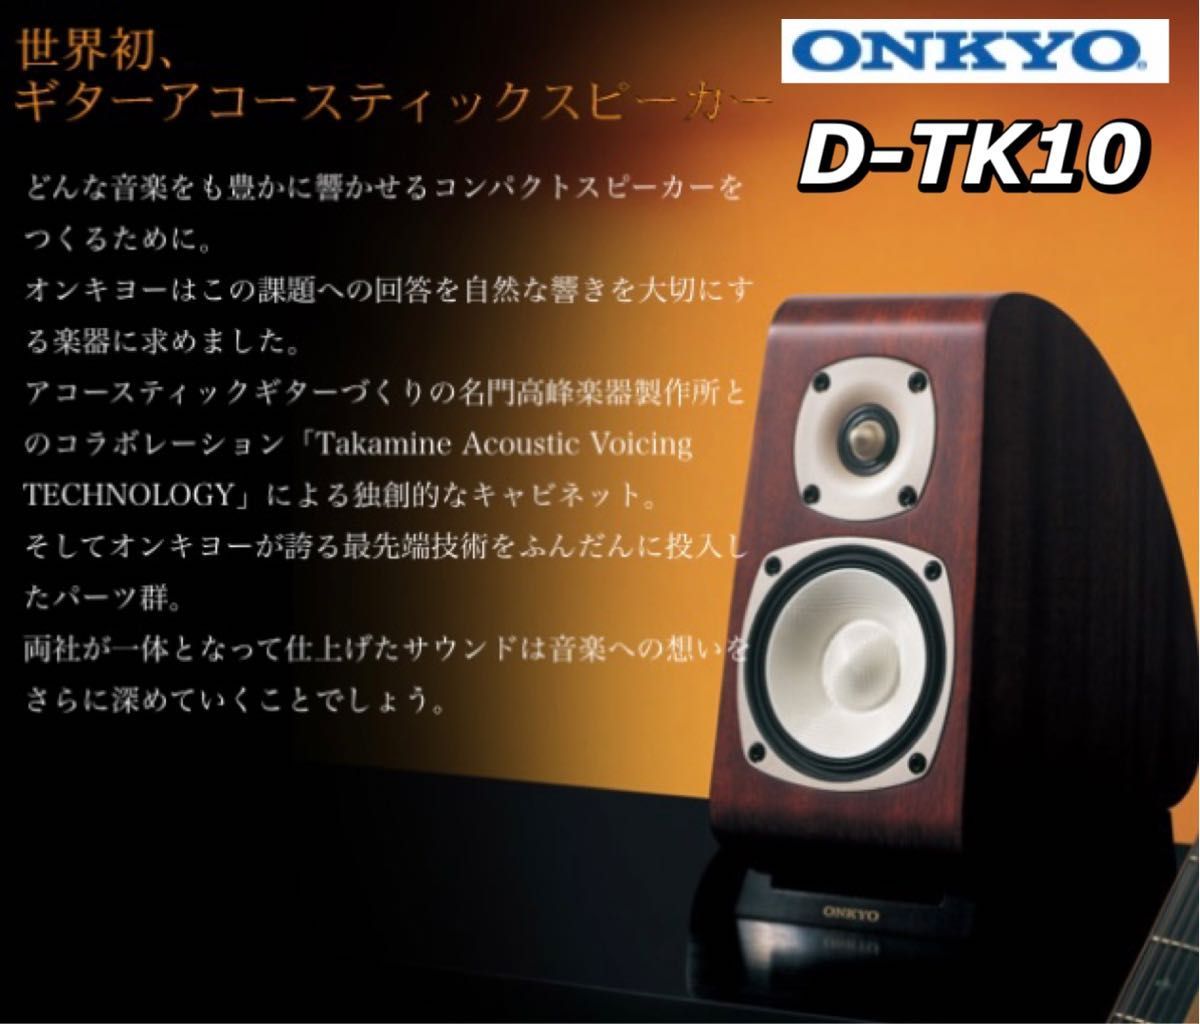 【世界初】ギターアコースティックスピーカー ONKYO D-TK10 ペア オンキョー 高級スピーカー 高峰楽器製作所コラボ ラグジュアリー